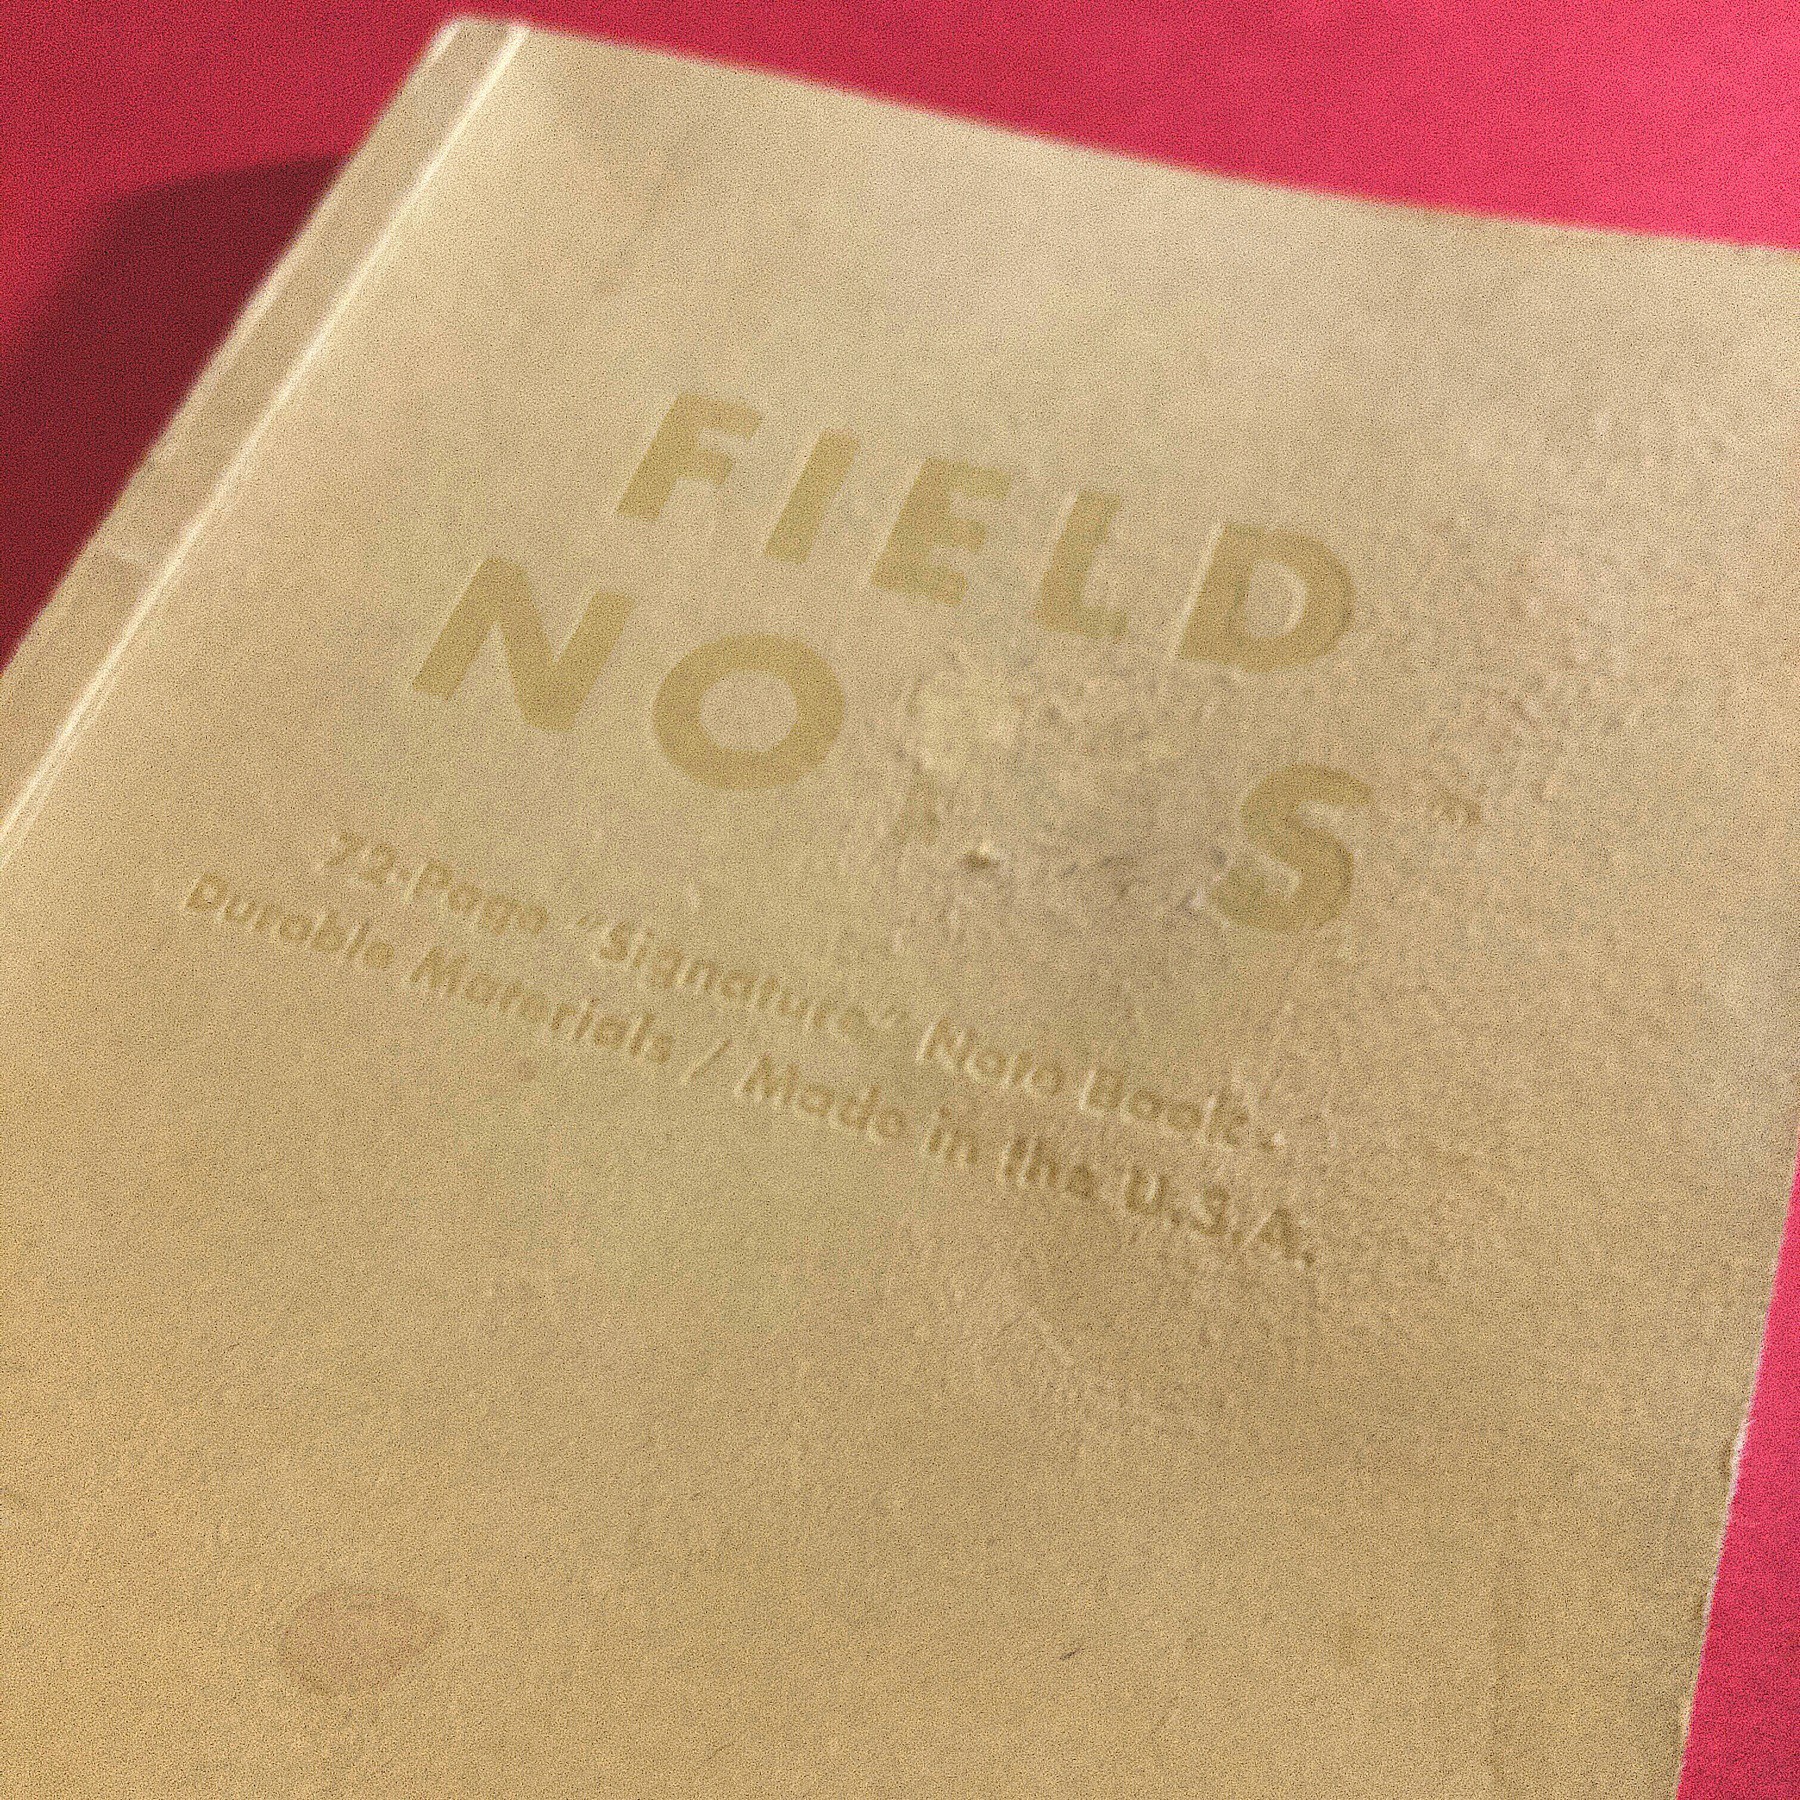 Worn notebook